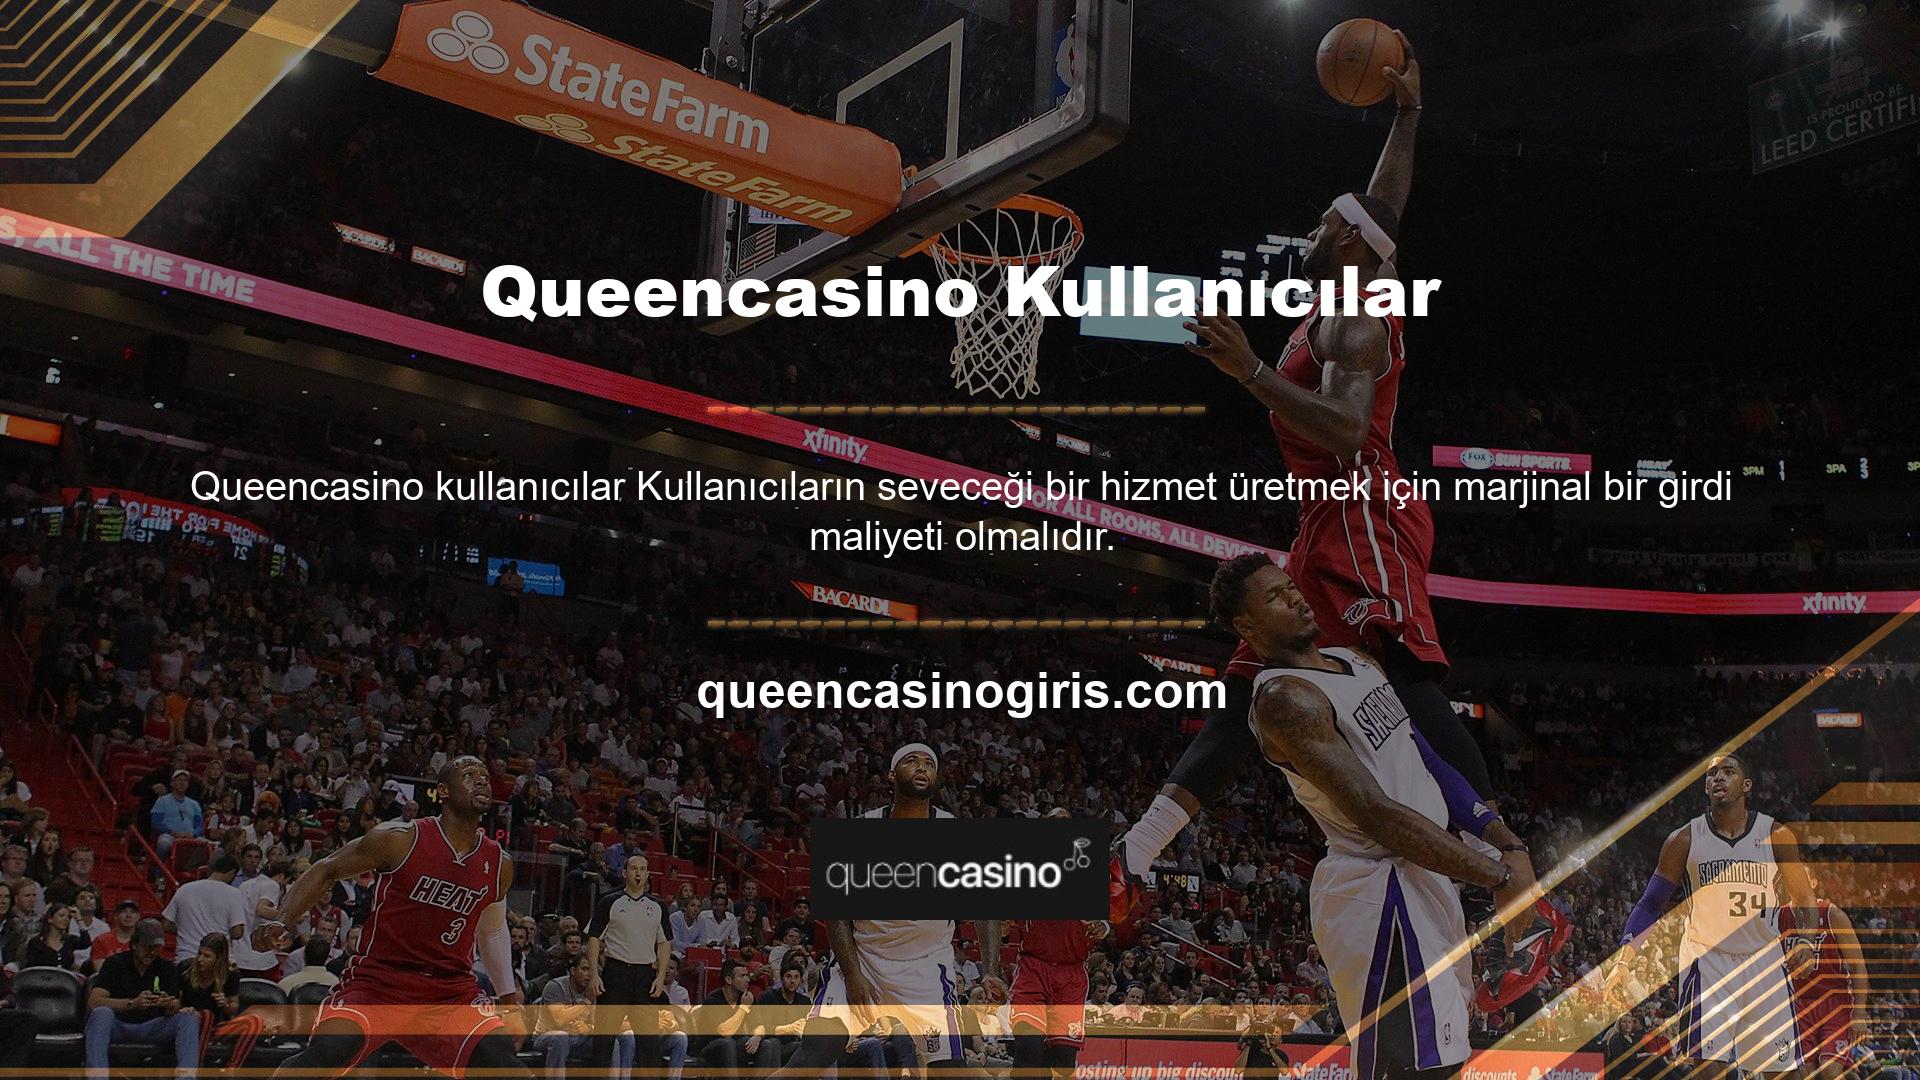 Spor şirketi Queencasino, kullanıcılarına değerli bir pozitif katkı sunuyor